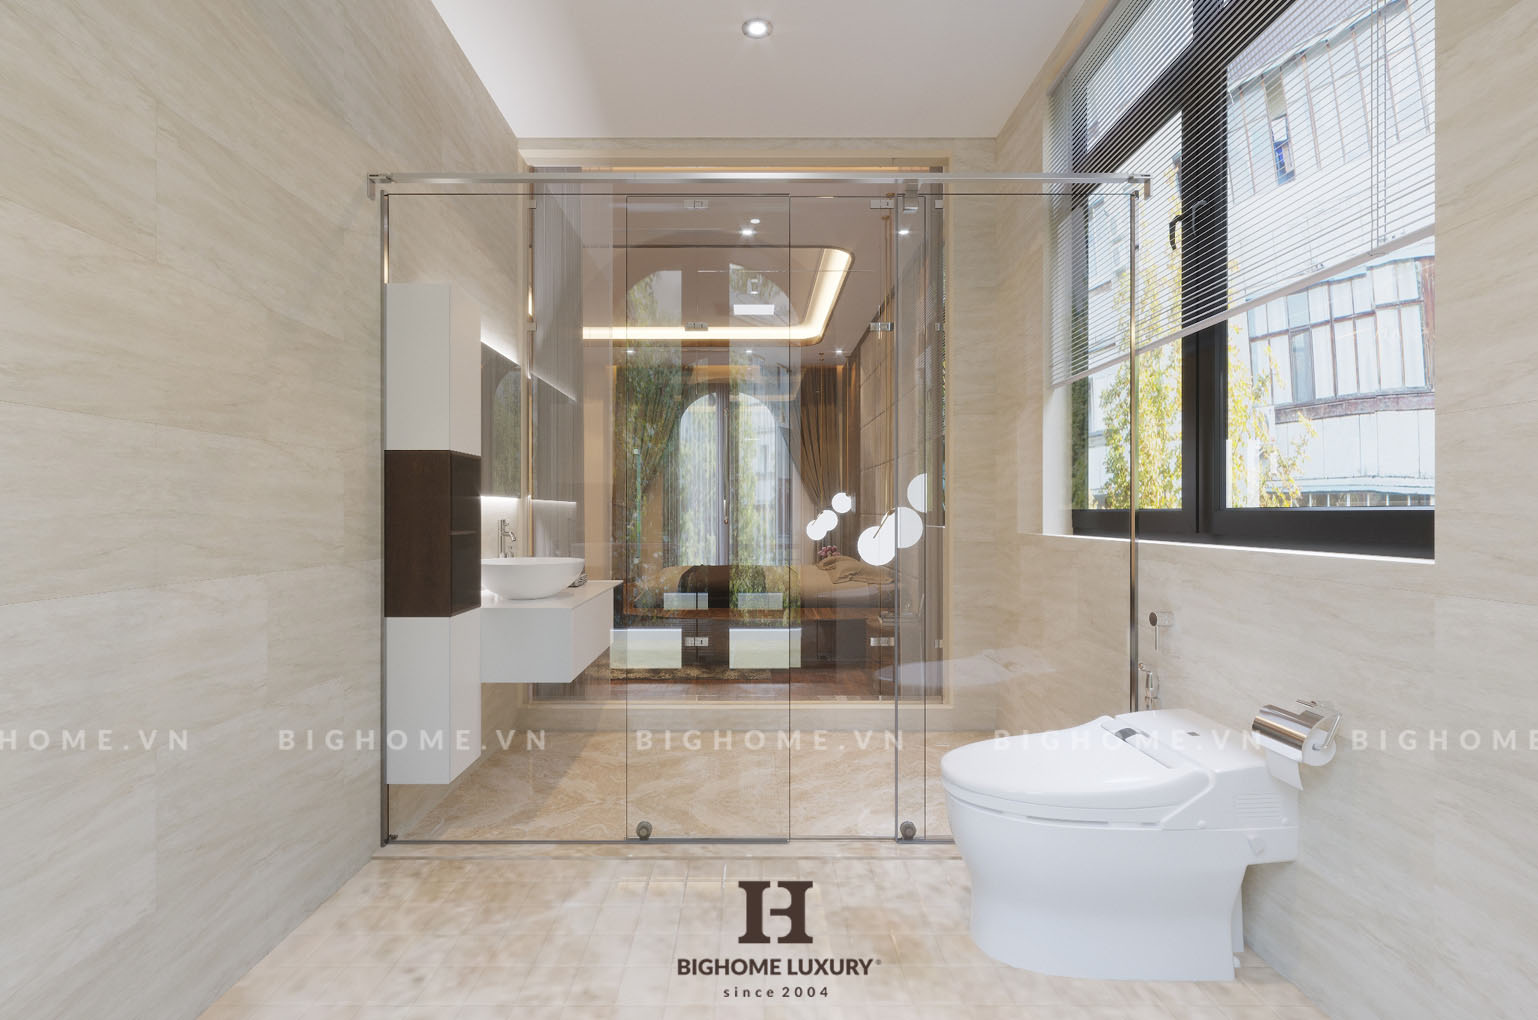 Thiết kế nội thất phòng tắm biệt thự Vinhomes Ocean tiện nghi, đẹp mọi góc nhìn